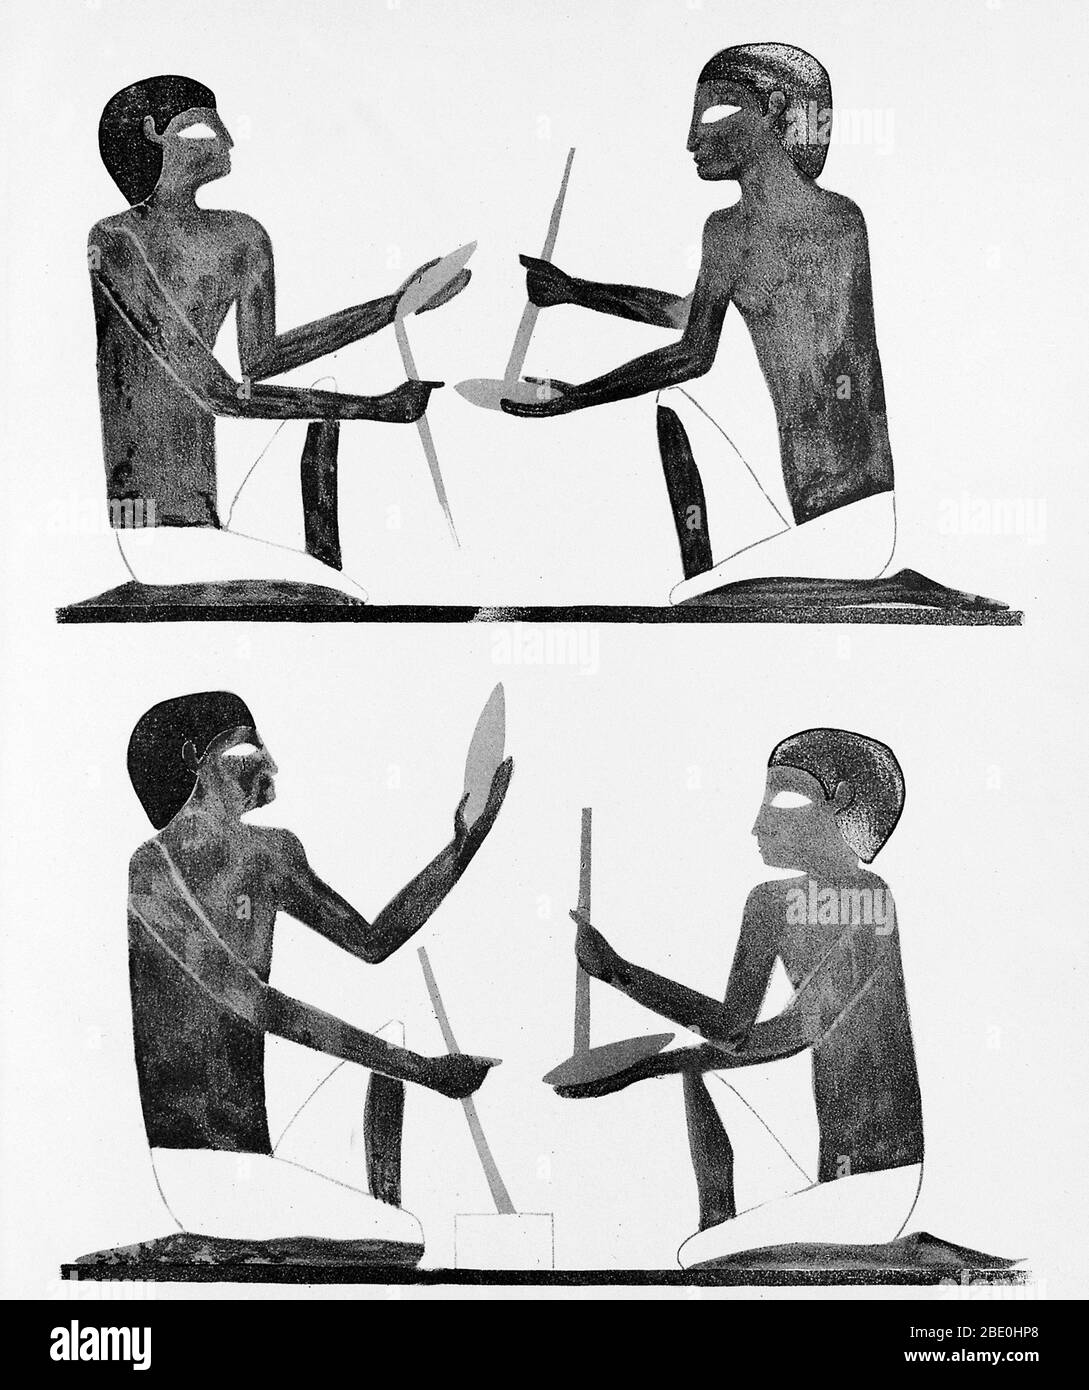 La produzione di coltelli di selce, come rappresentato nella tomba egiziana di Beni Hasan, situata a sud del moderno Minya nella regione conosciuta come Medio Egitto, l'area tra Asyut e Memphis. Questo sito è stato utilizzato principalmente durante il Regno di mezzo, che si estende dal 21 ° al 17 ° secolo BCE (età del bronzo medio). Foto Stock